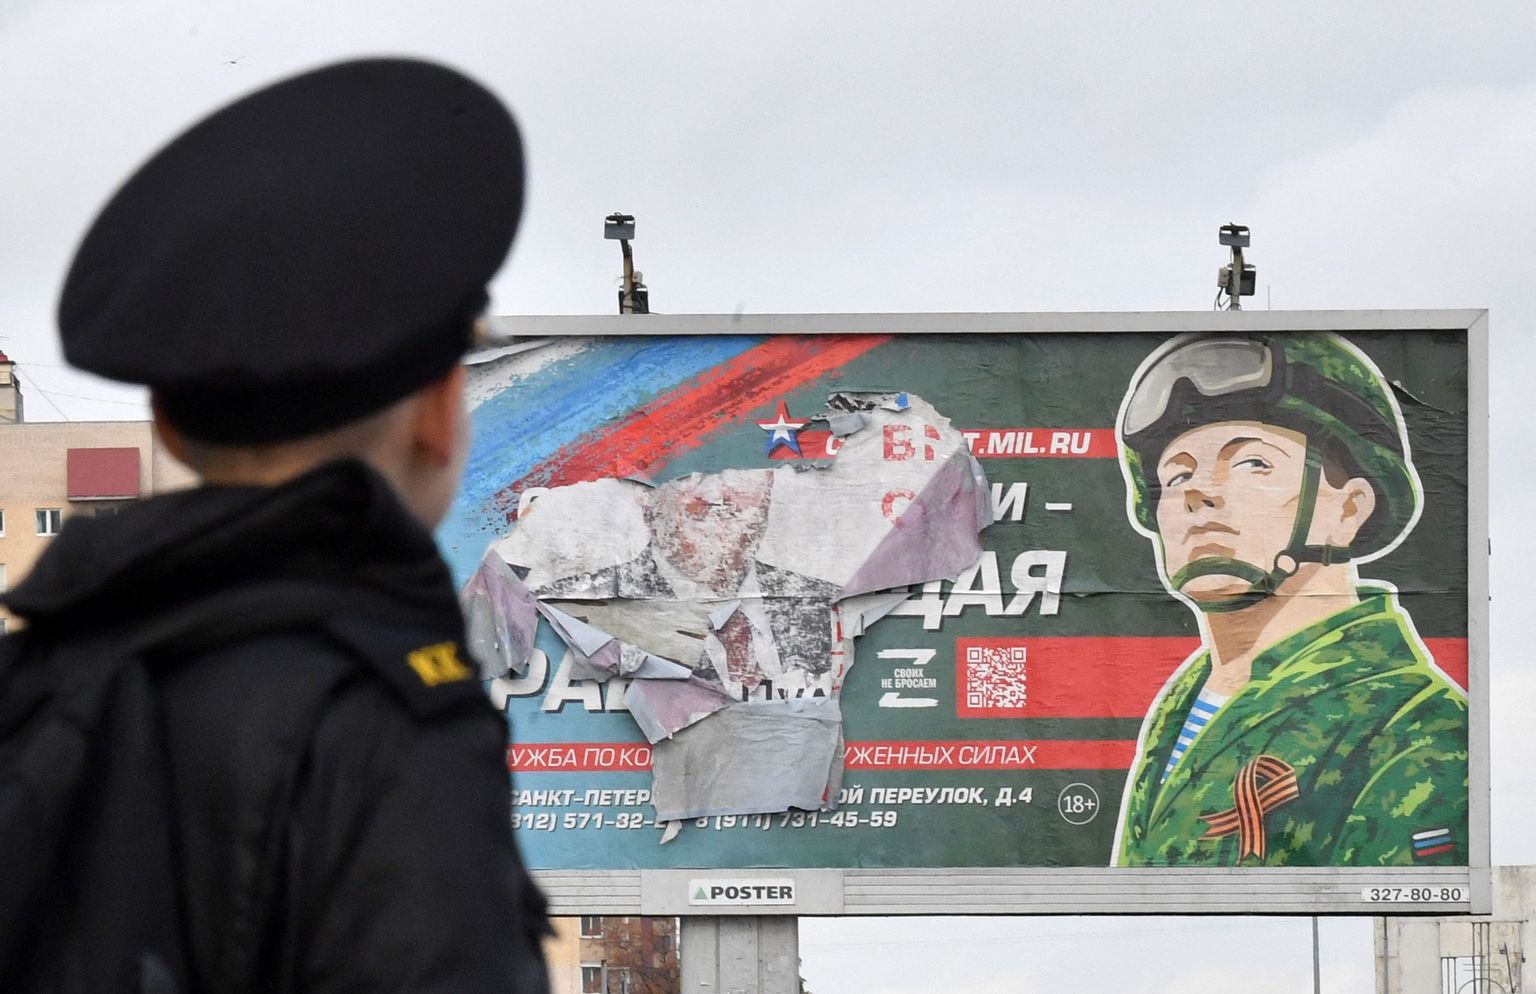 Kadett Peterburis sõjaväeteenistust propageeriva plakati ees.